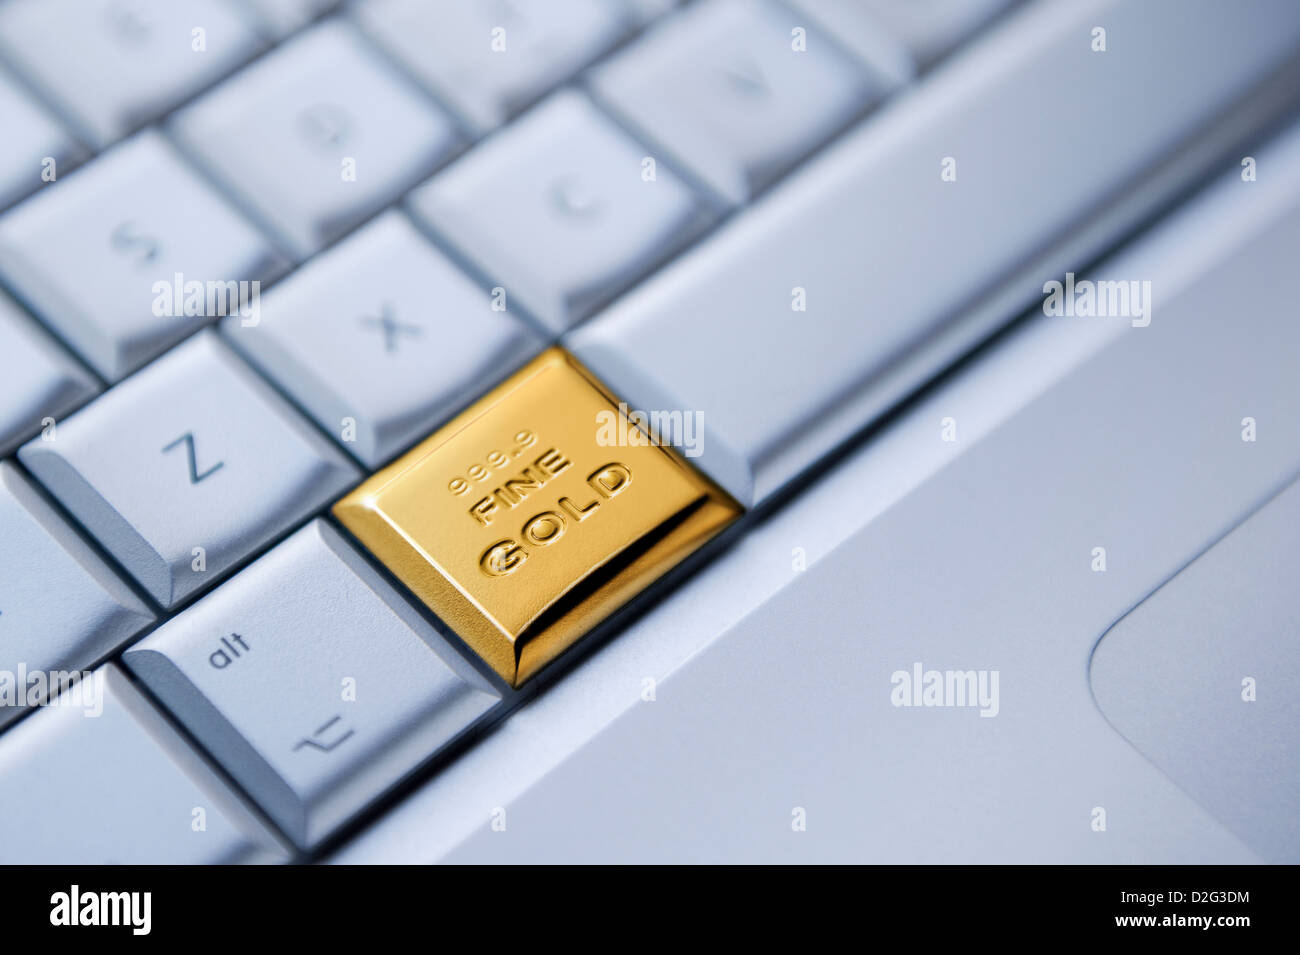 Détail d'un clavier avec une touche comme une barre d'or solide - online business / argent / or / concept de stocks commerciaux Banque D'Images